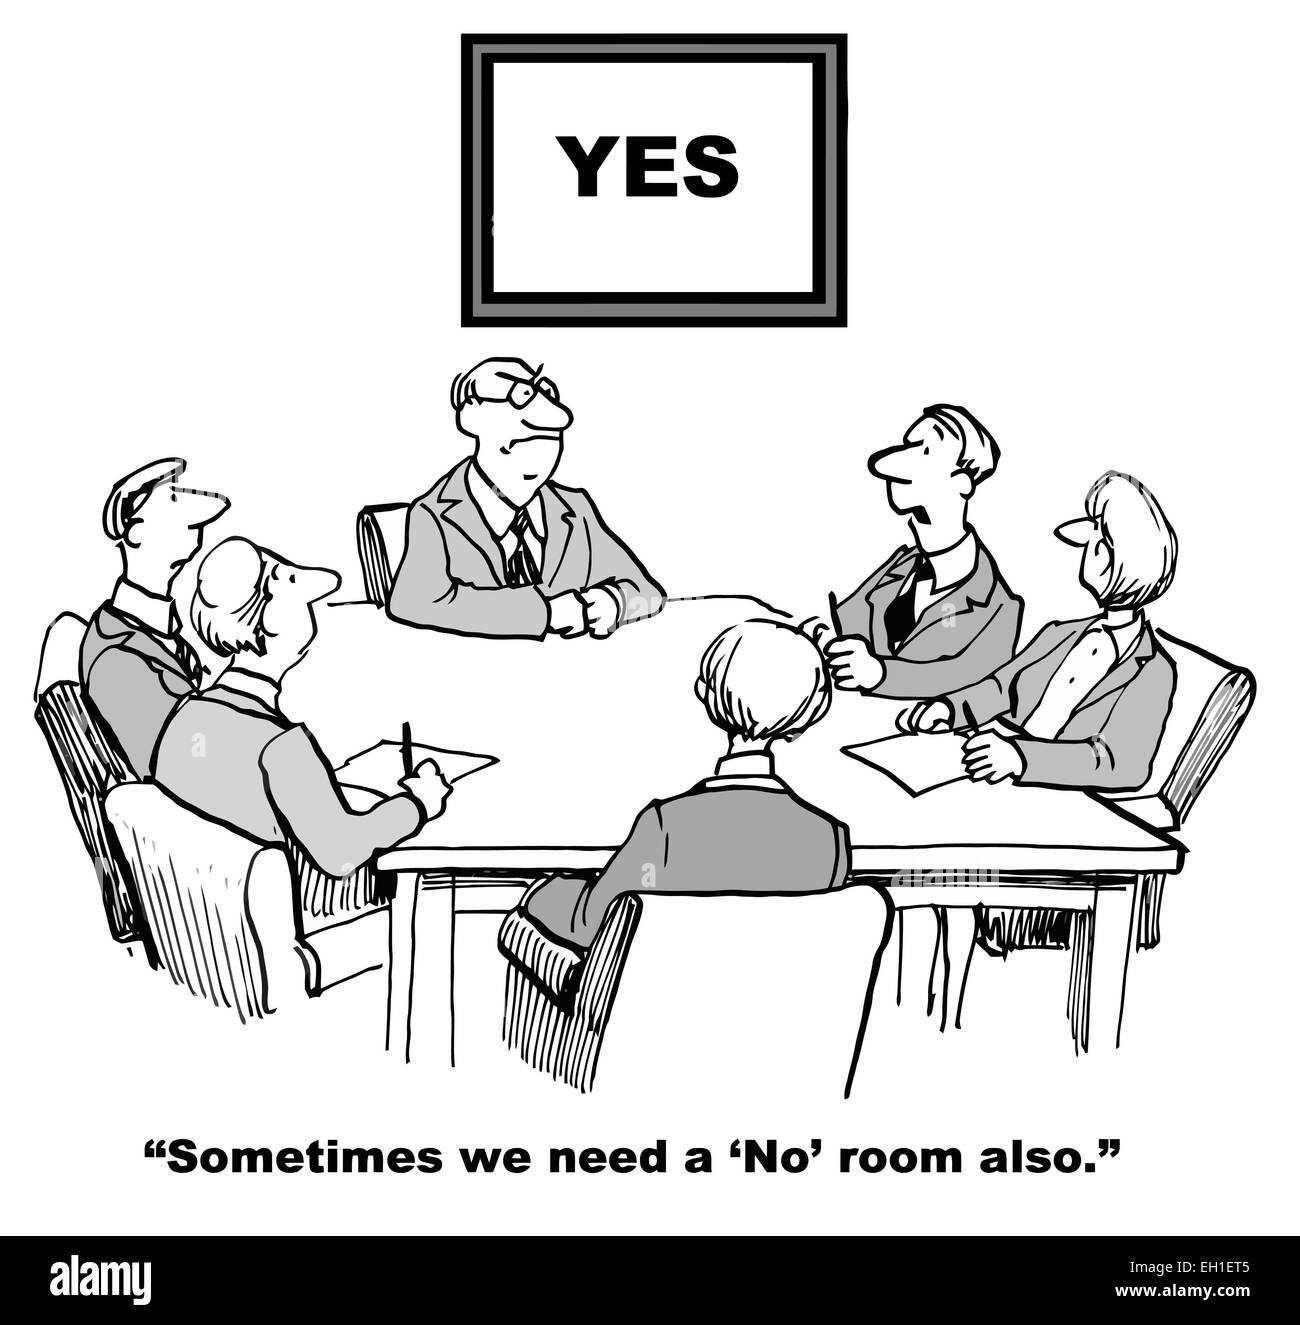 Karikatur von Business-meeting findet im Konferenzraum ja.  Kaufmann sagt, irgendwann wir brauchen ein "Nein" Zimmer auch. Stock Vektor